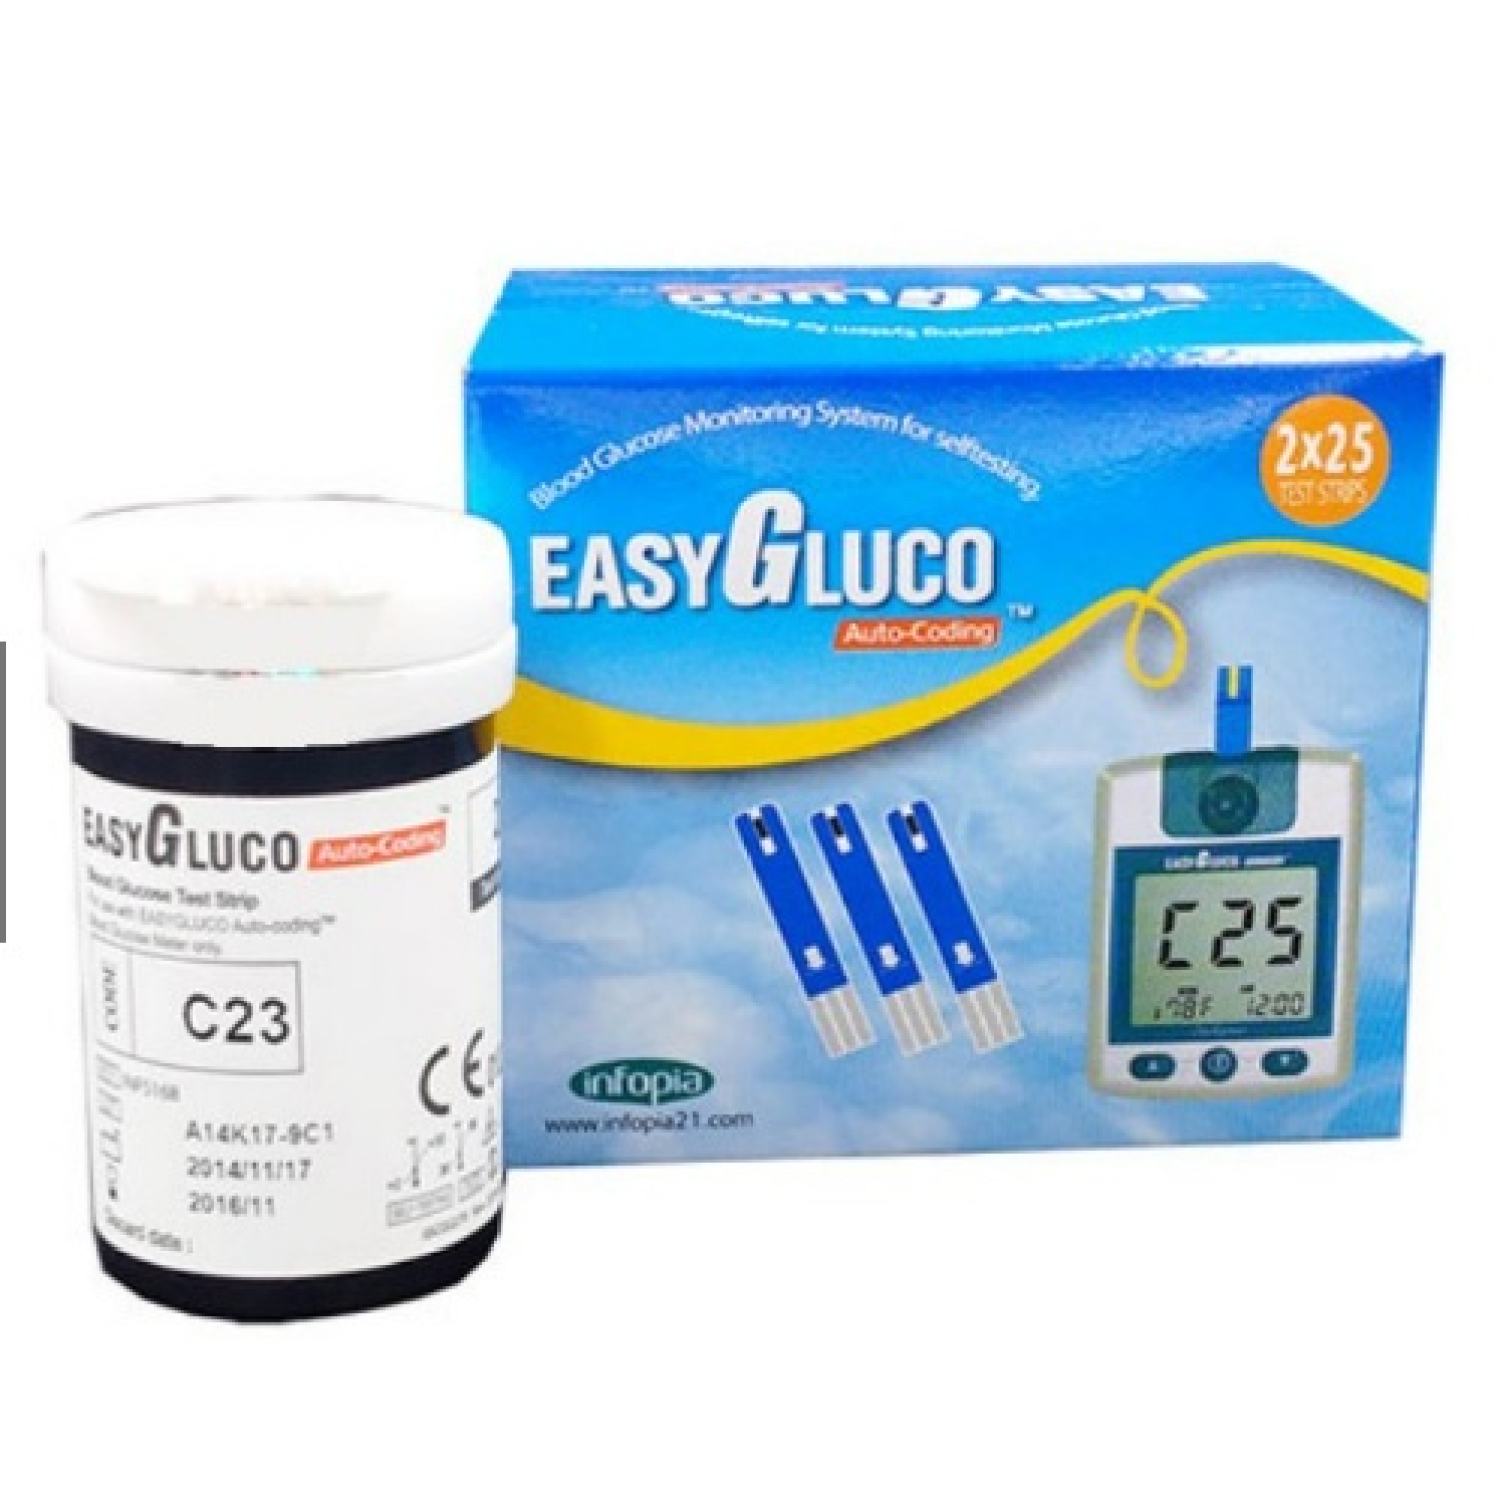 EASYGLUCO HỘP 50 QUE - Que thử đường huyết dùng cho máy Easy Gluco Auto